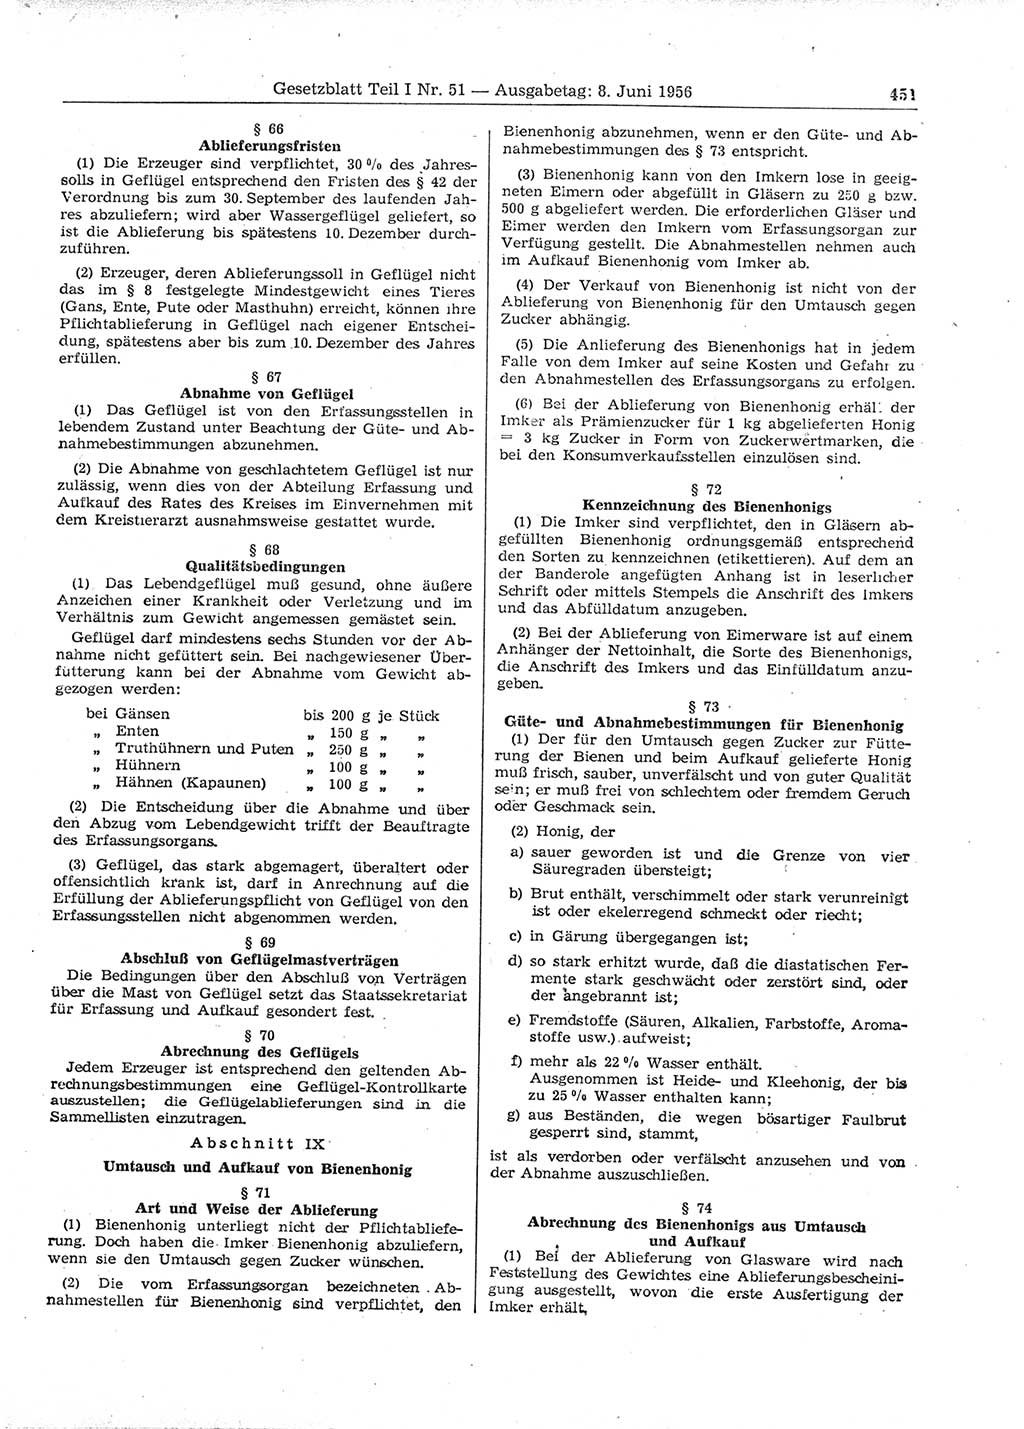 Gesetzblatt (GBl.) der Deutschen Demokratischen Republik (DDR) Teil Ⅰ 1956, Seite 451 (GBl. DDR Ⅰ 1956, S. 451)